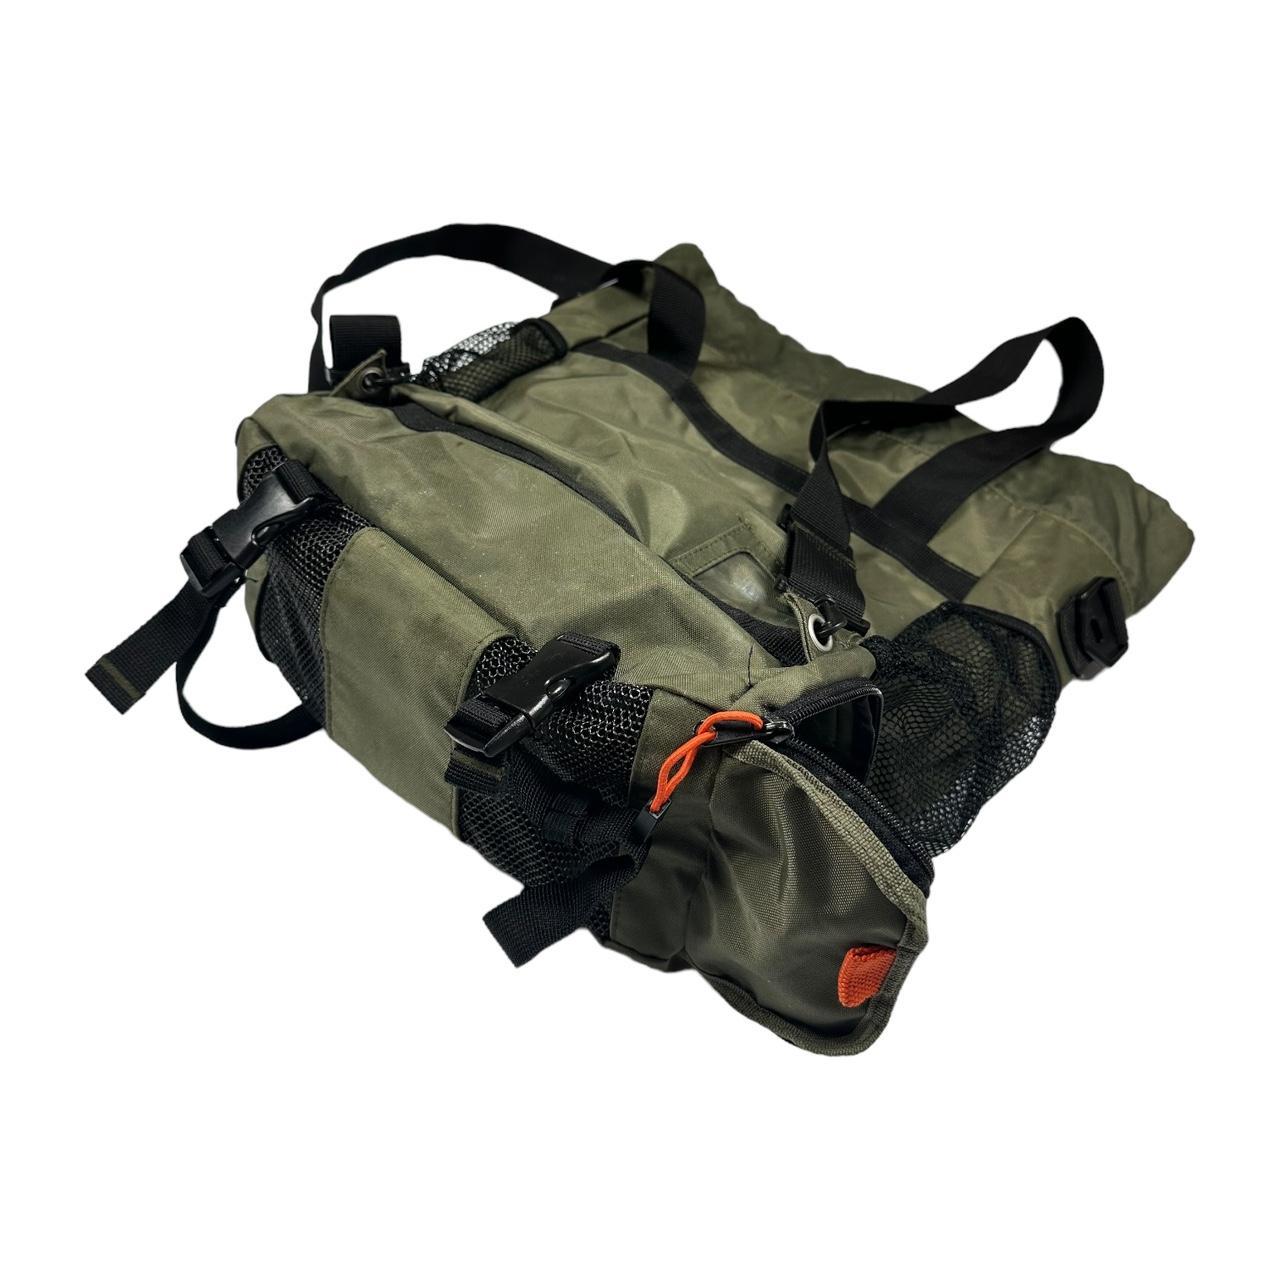 S/S 2003 GAP Khaki Green Utility Backpack